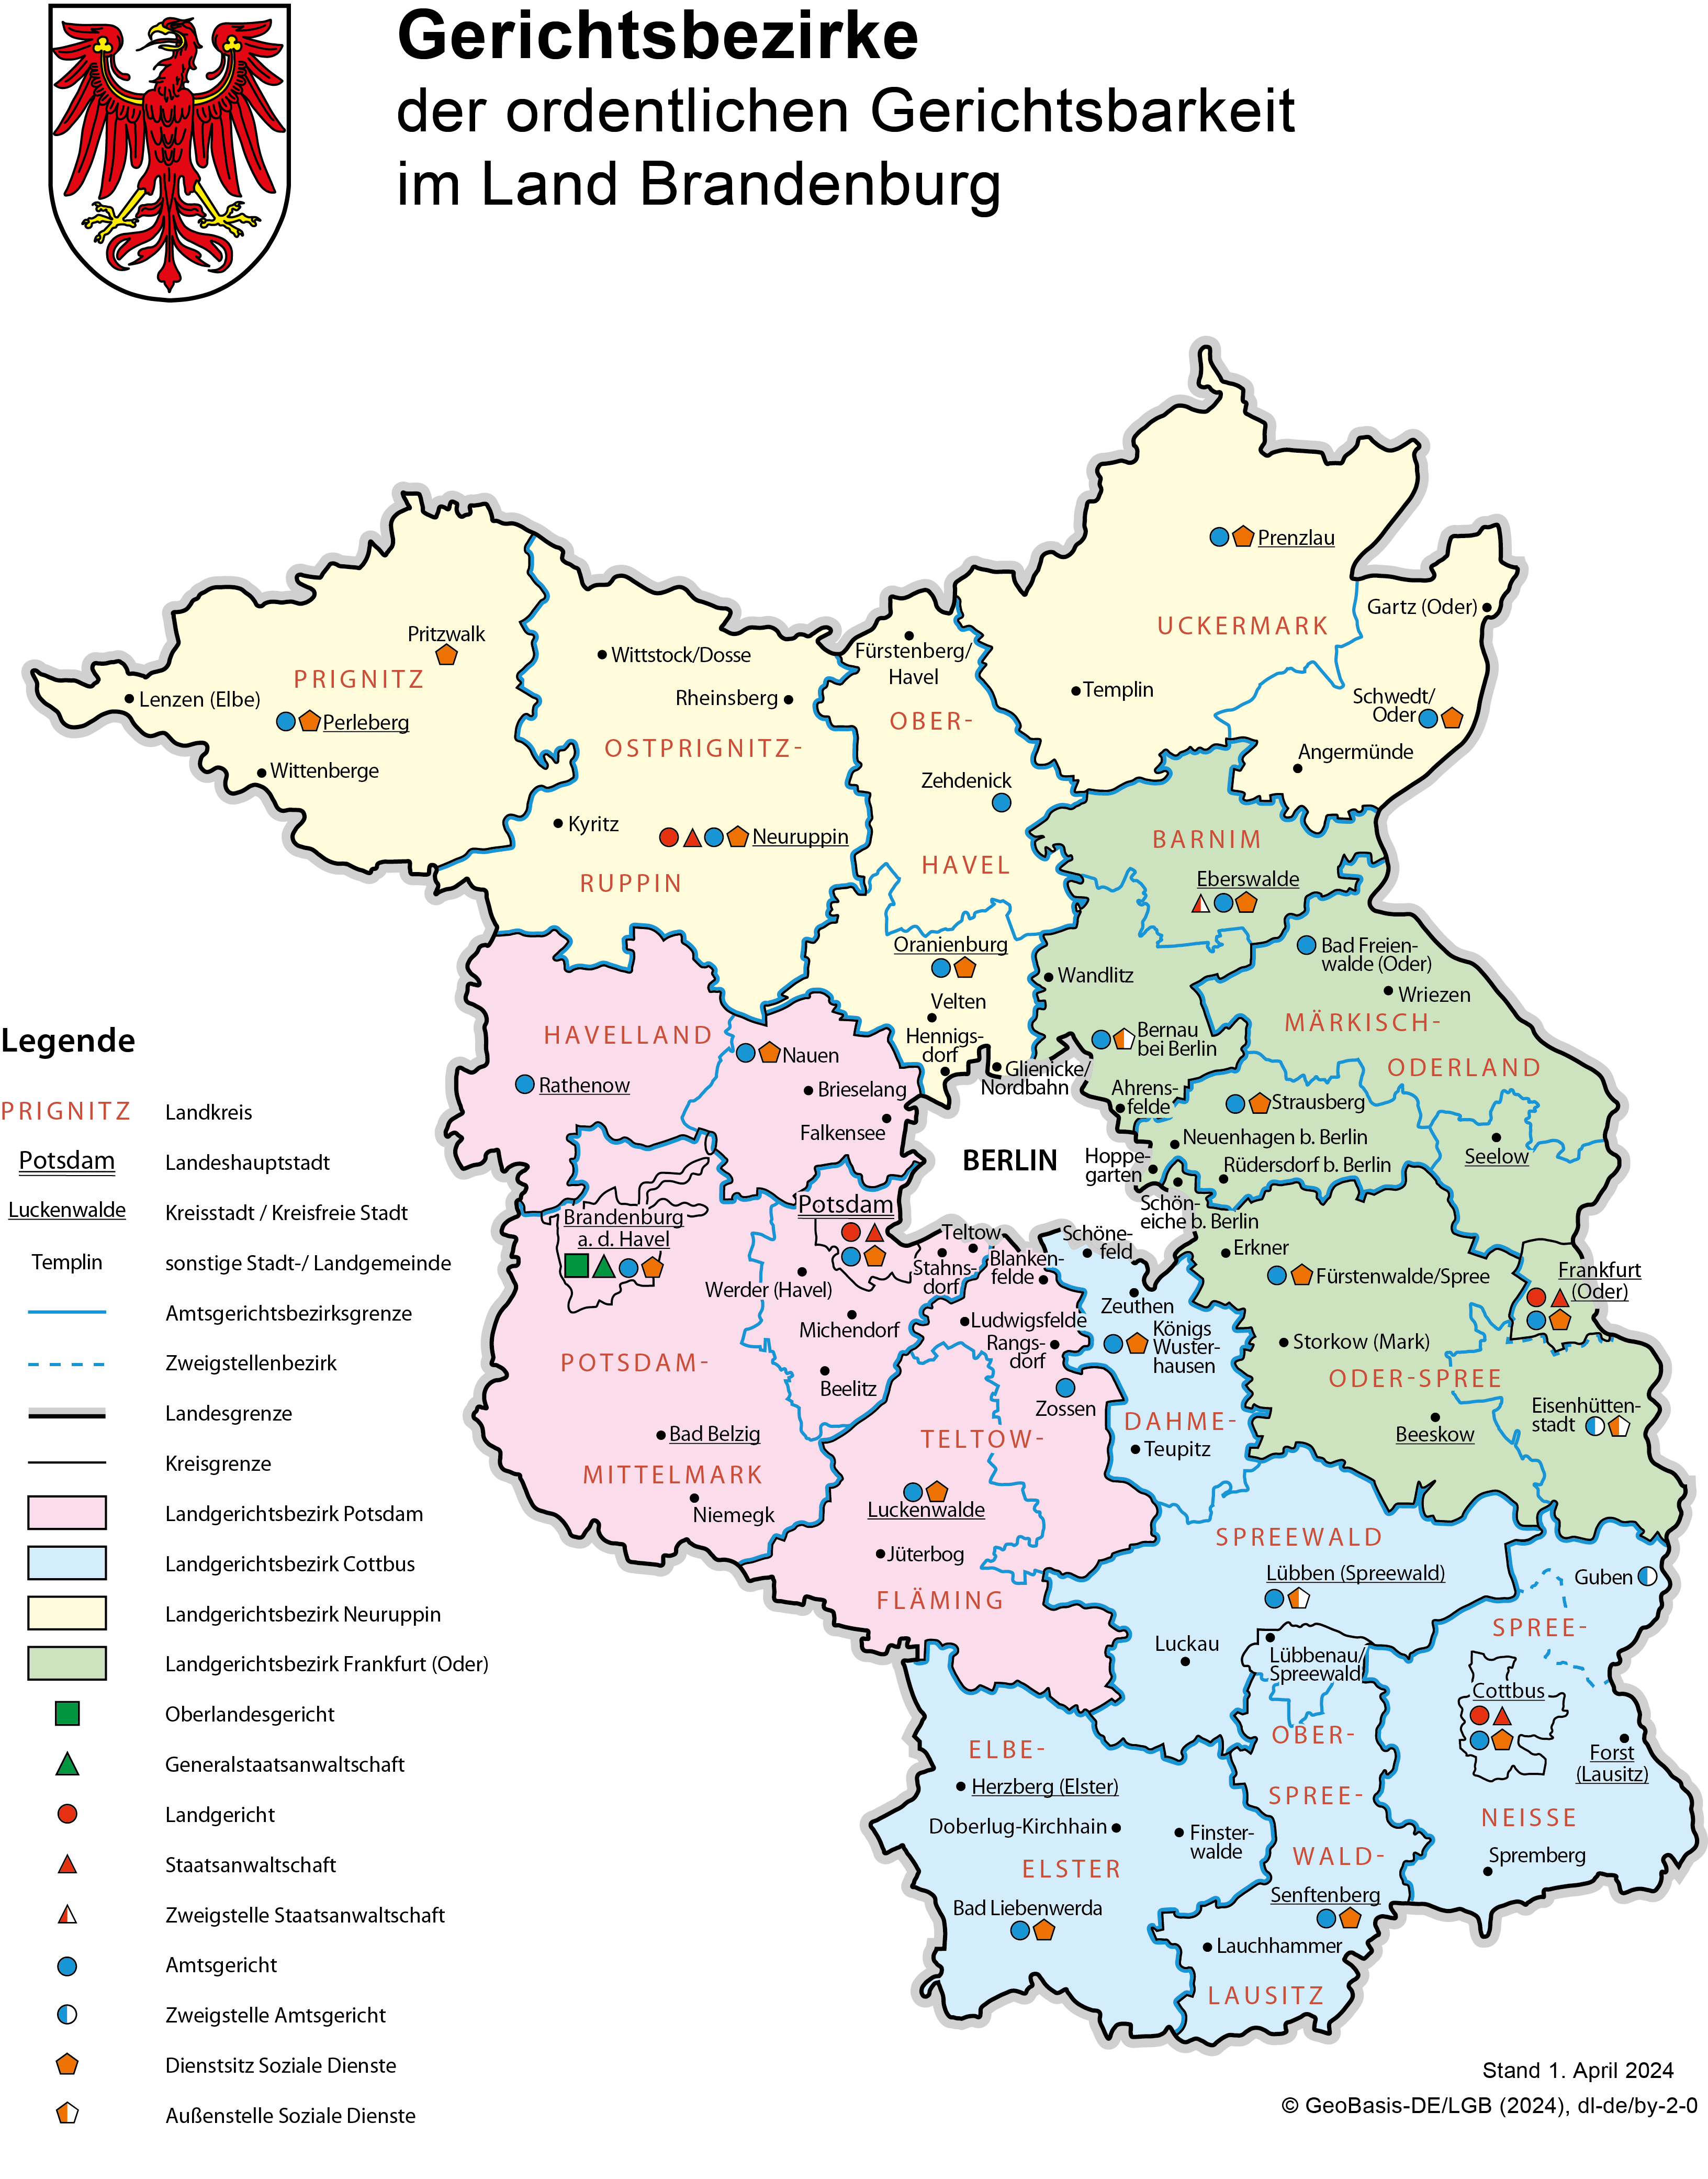 Vergrößerte Ansicht: Kartendarstellung der Gerichte und Gerichtsbezirke des Landes Brandenburg